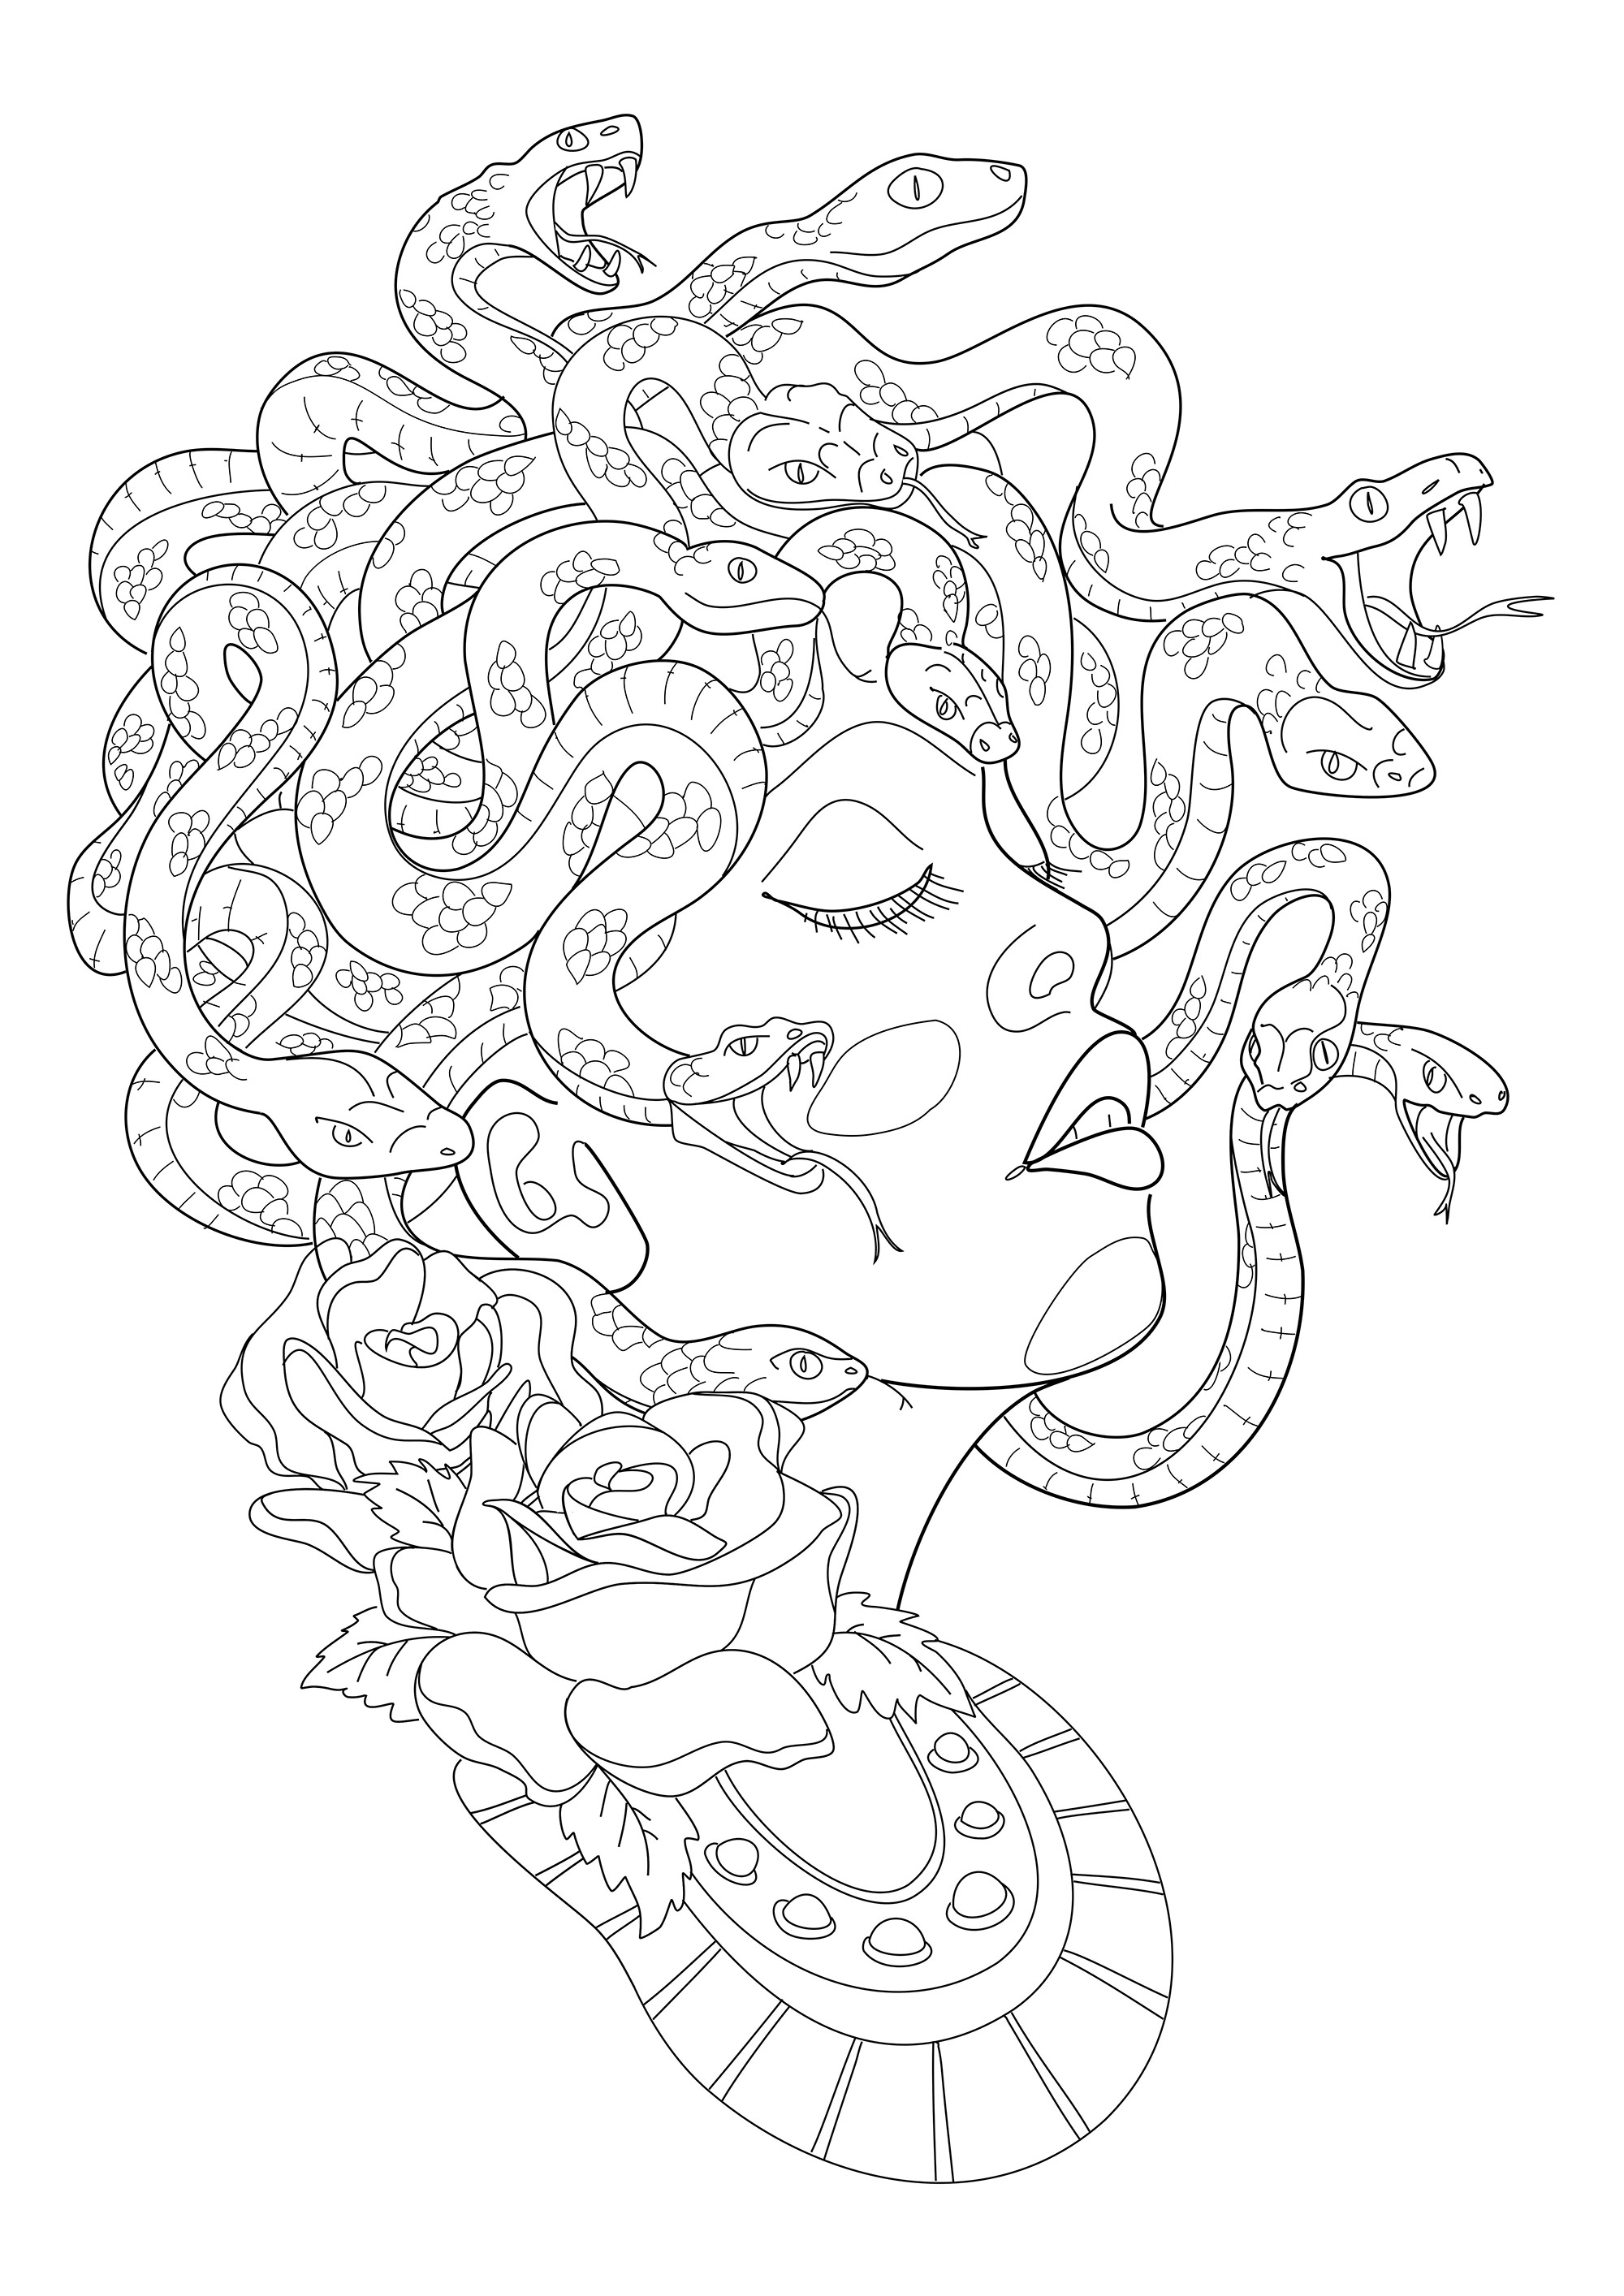 Medusa vista de perfil, com as suas serpentes assustadoras a formar o seu cabelo. Excerto de 'Realistic Tattoos Coloring Book' de Roberto 'Gi